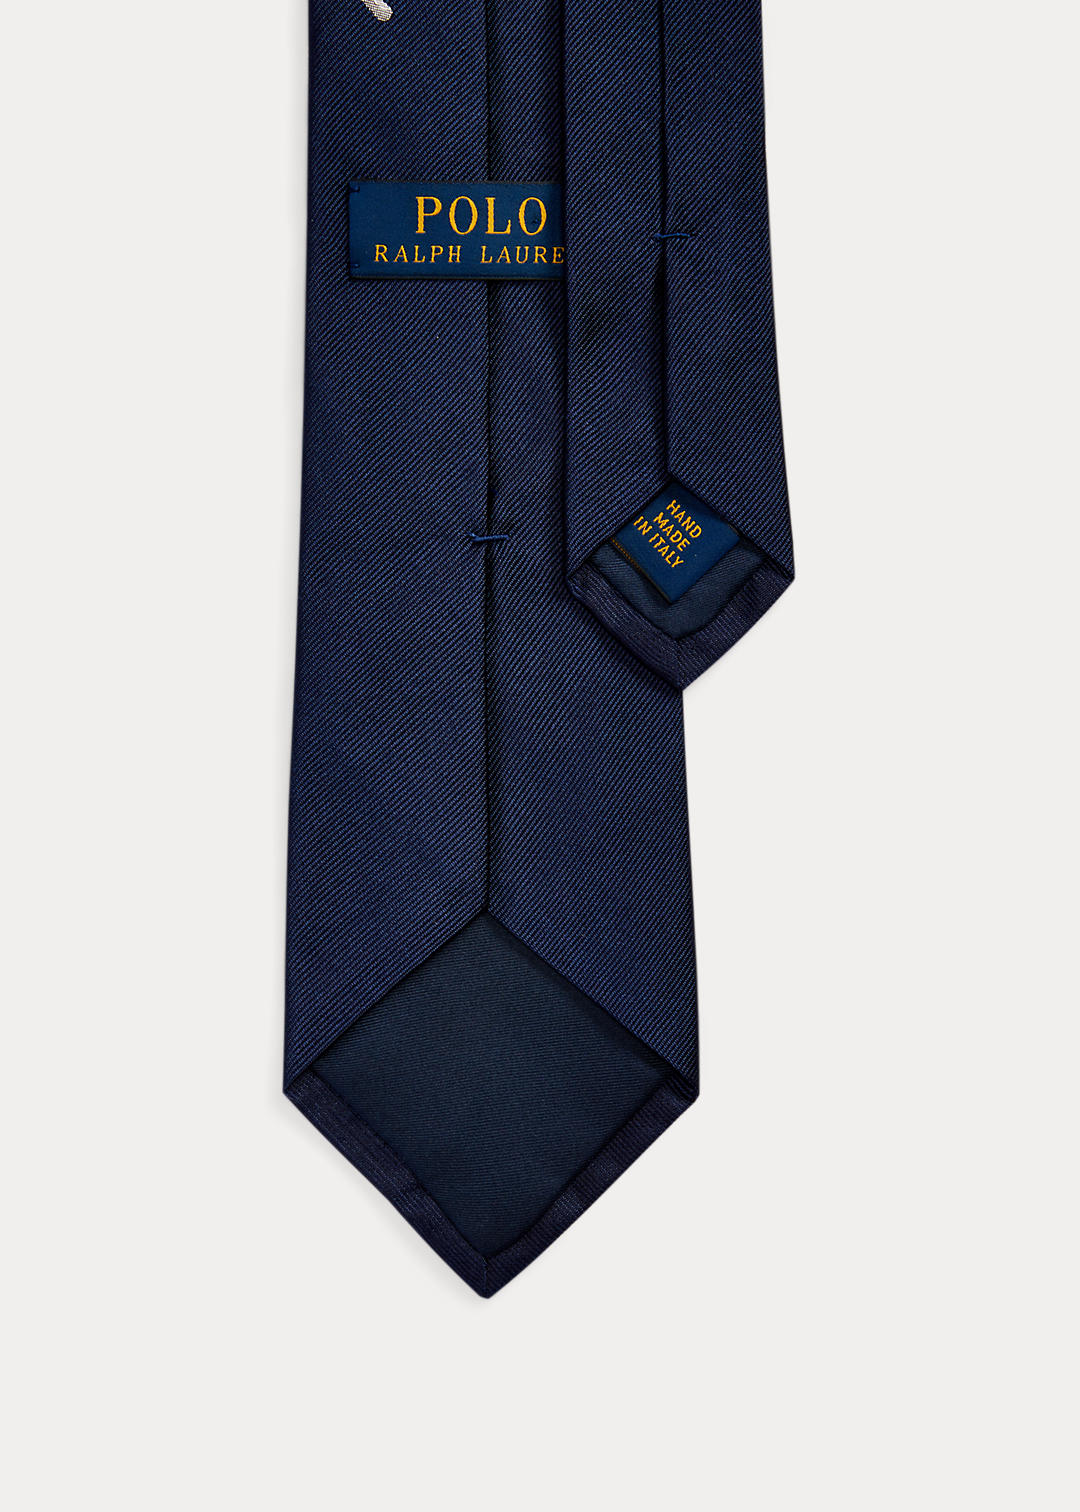 Polo Ralph Lauren Cravate en soie rames croisées 2